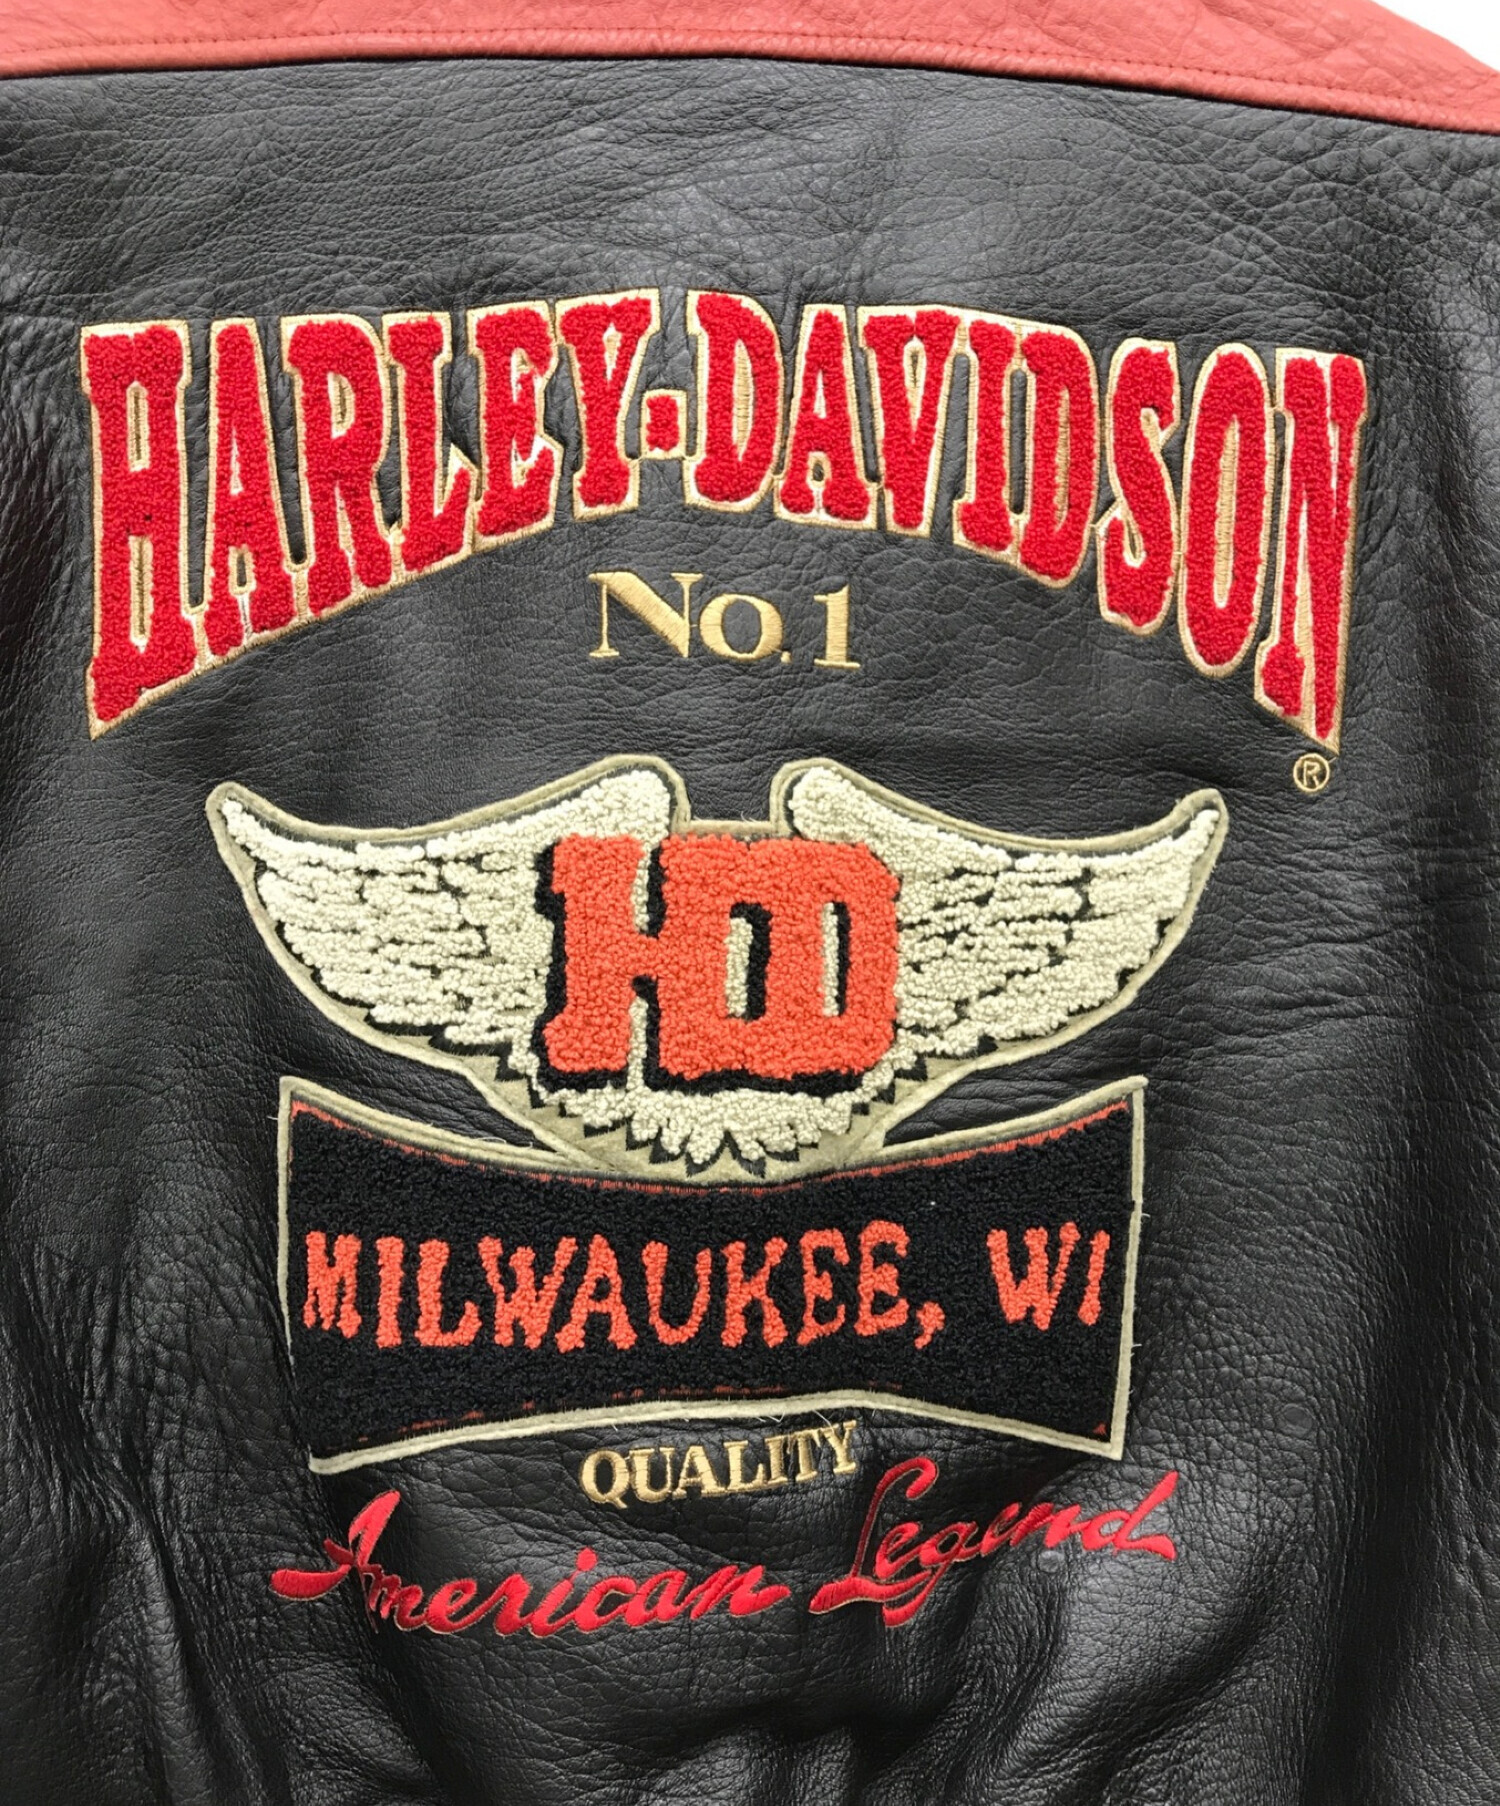 HARLEY-DAVIDSON (ハーレーダビッドソン) レザージャケット ブラック×レッド サイズ:L